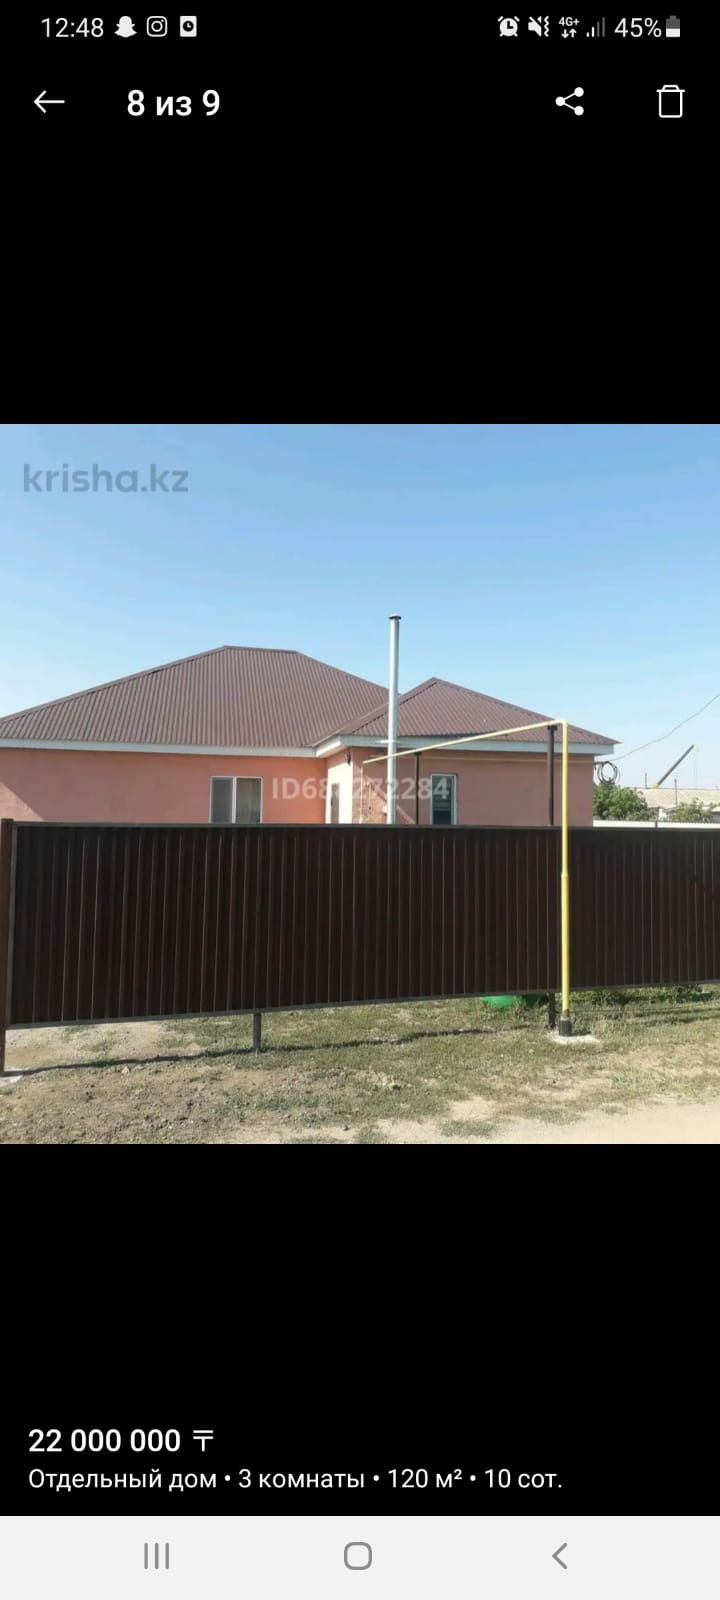 Продам дом в Кызылжар